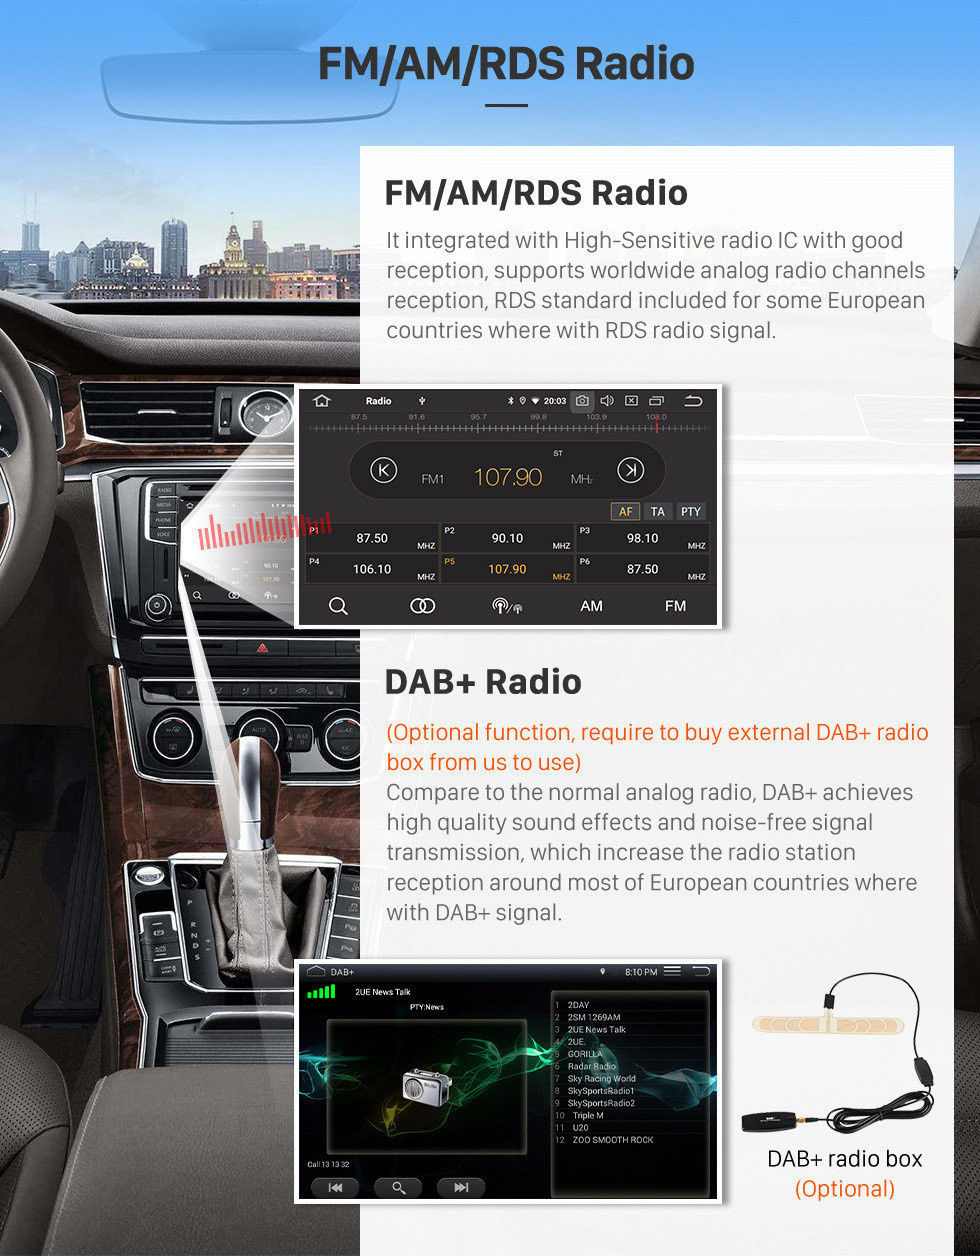 Seicane 10,1-дюймовый вторичный рынок Android 13.0 Радио GPS-навигационная система для 2012-2015 VW Volkswagen MAGOTAN 1024 * 600 Сенсорный экран TPMS DVR OBD II Управление рулевым управлением USB Bluetooth WiFi Видео AUX